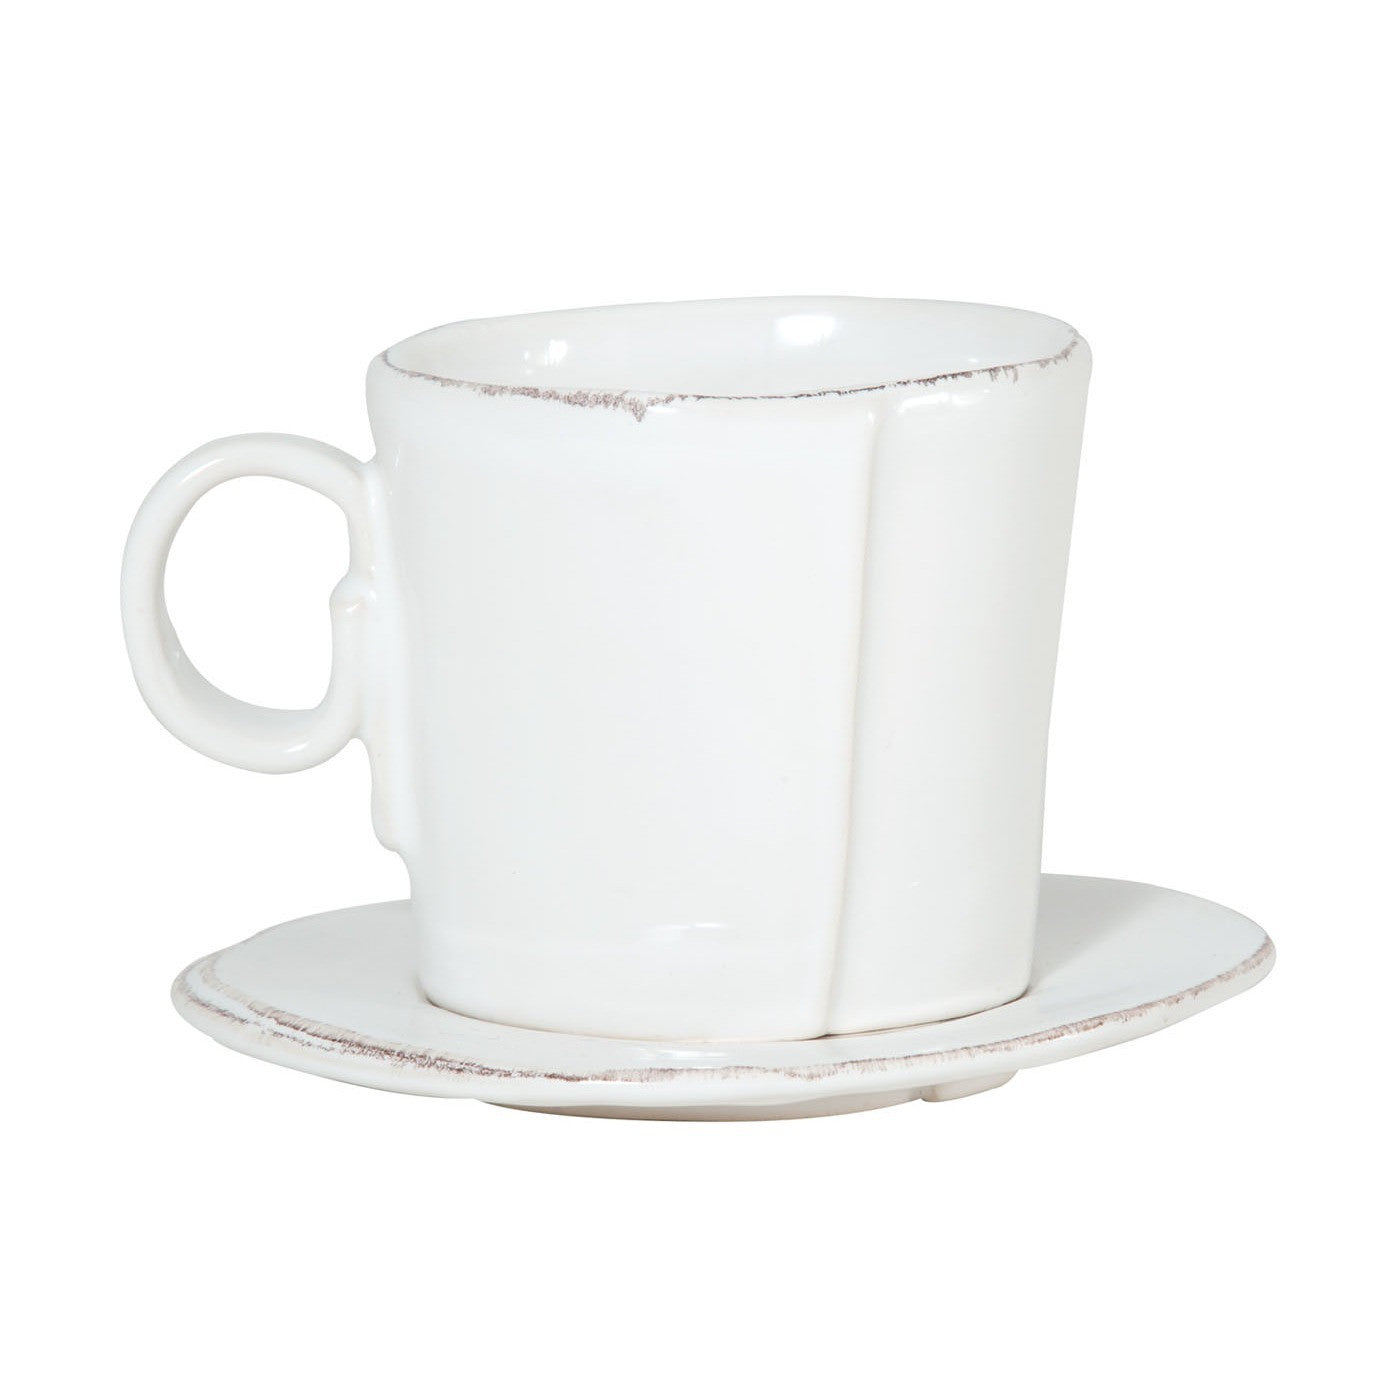 VIETRI: Lastra White Espresso Cup and Saucer - Artistica.com